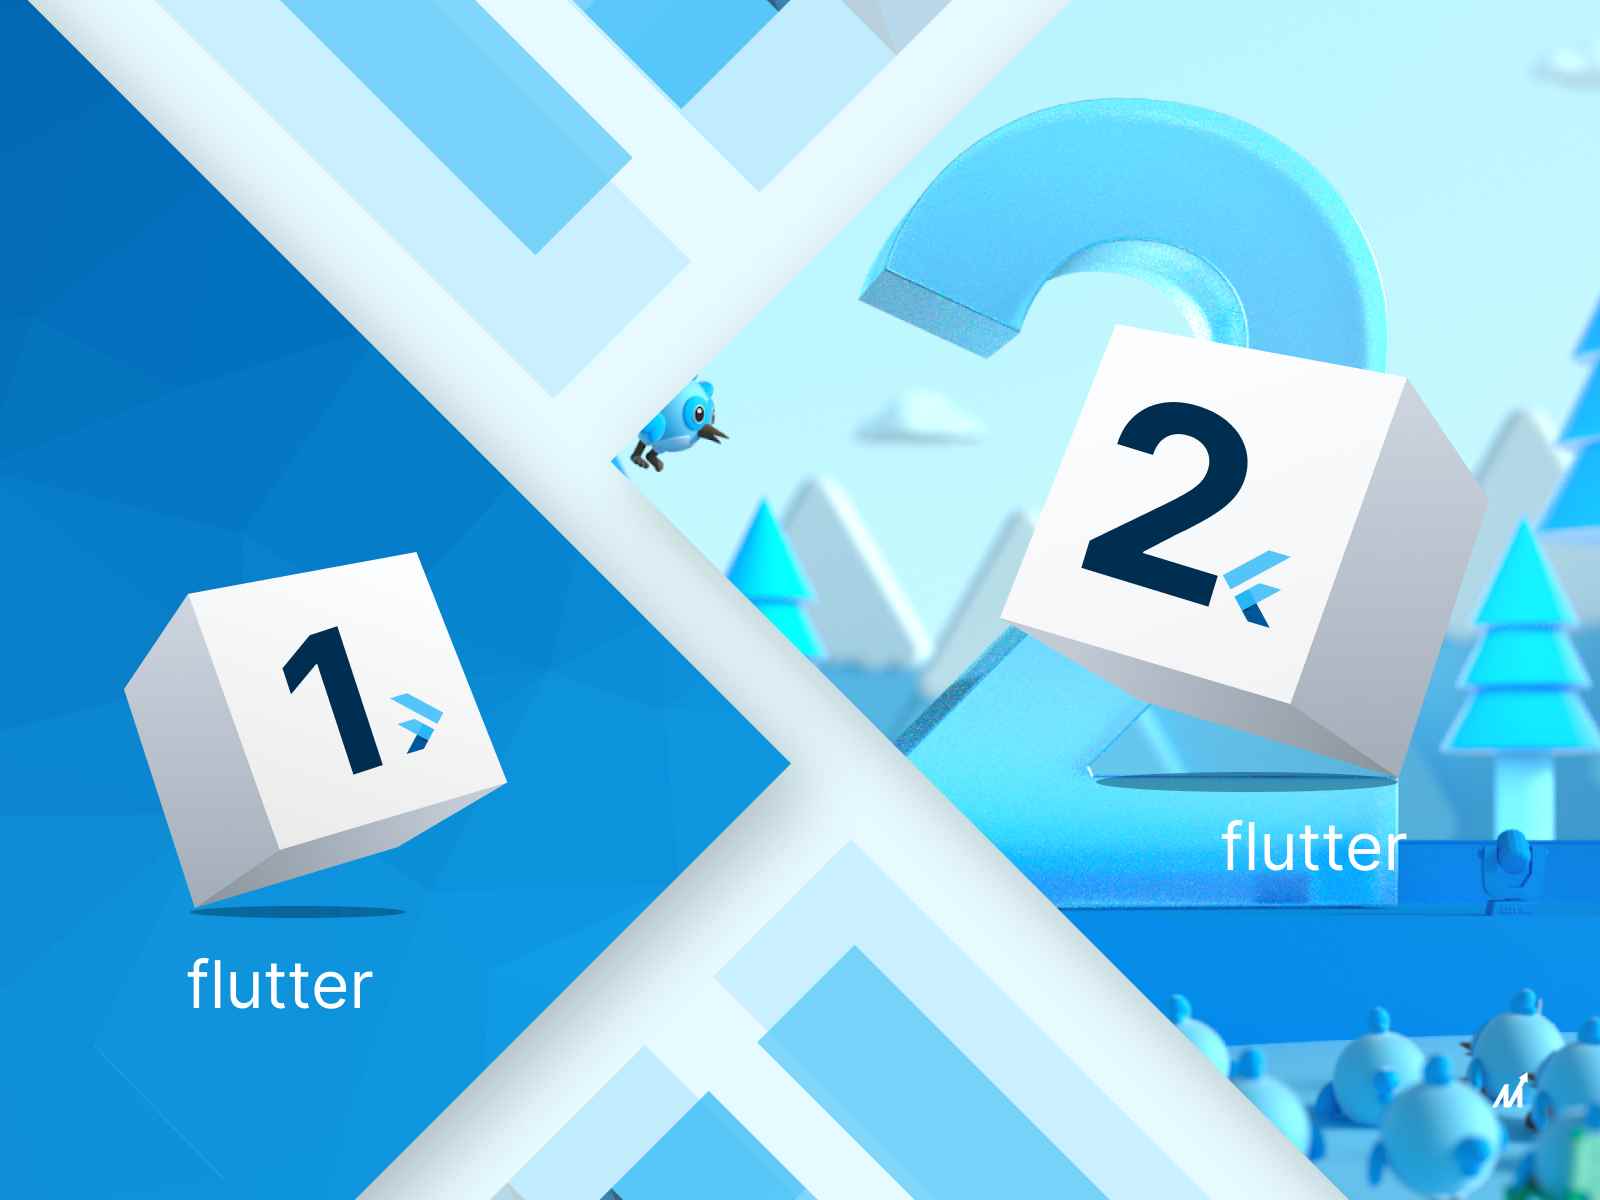 How is Flutter 2 Better than Flutter 1